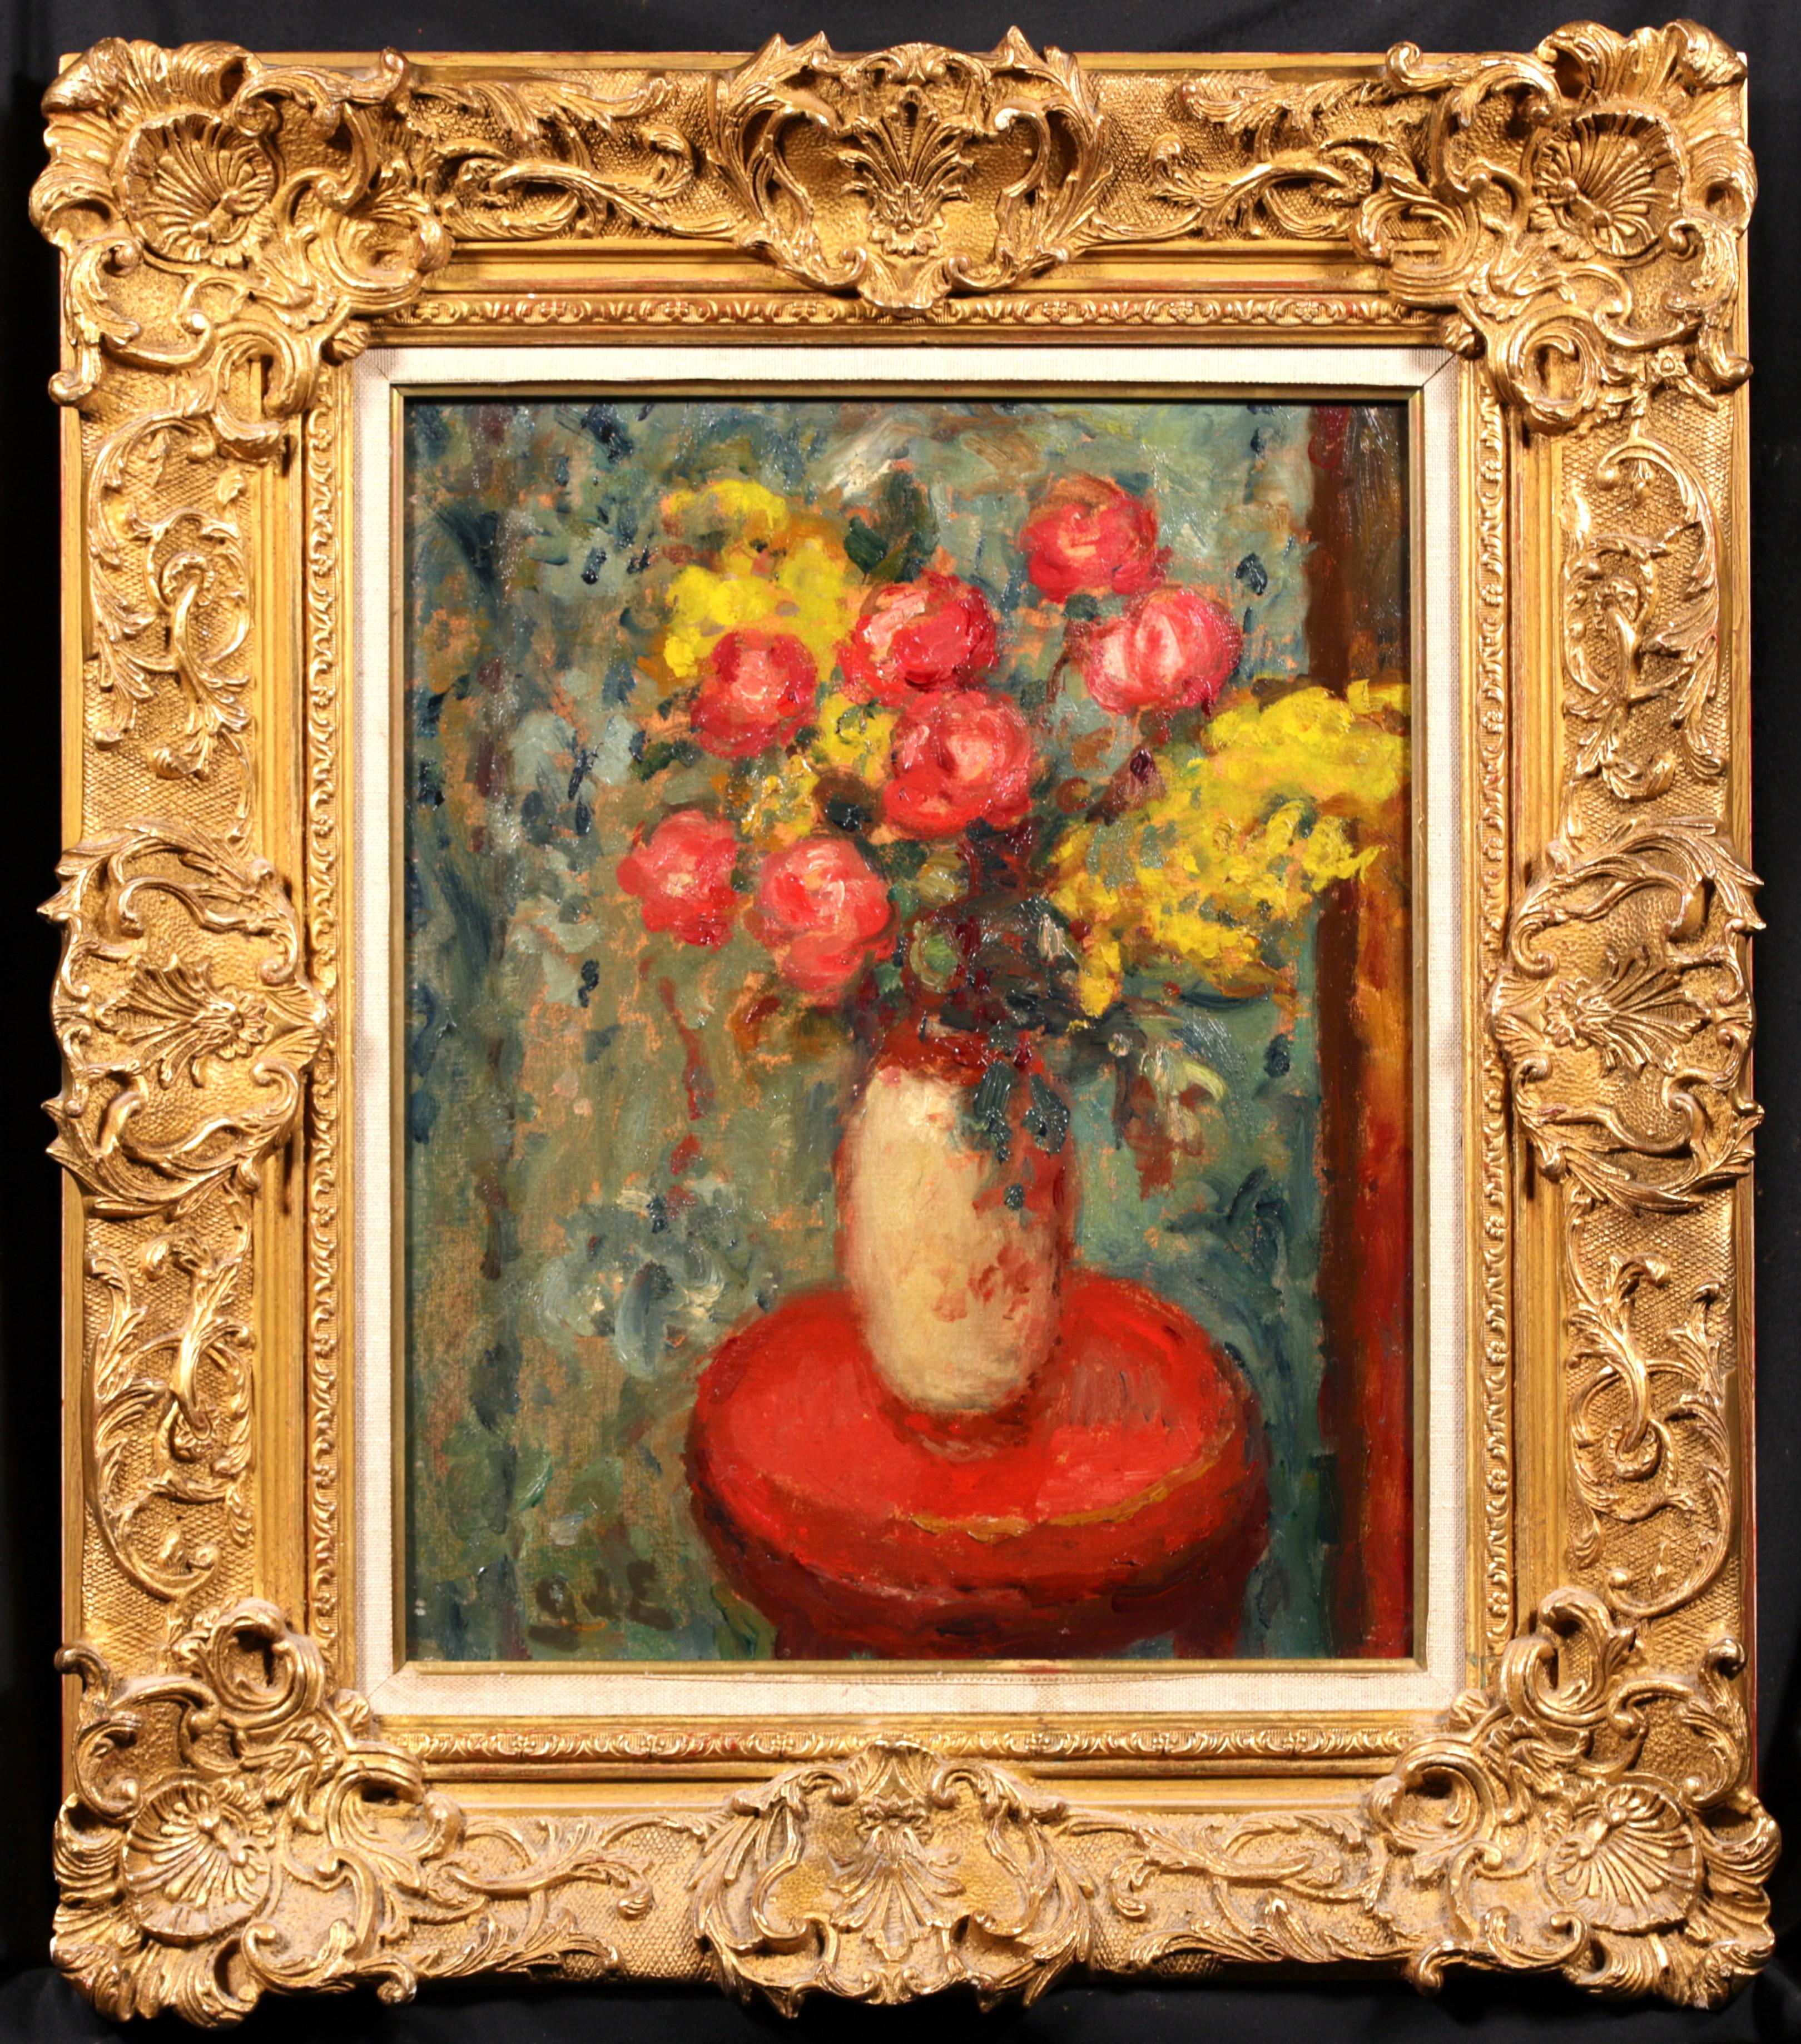 Signiertes Stillleben in Öl auf Leinwand um 1920 von dem französischen postimpressionistischen Maler Georges D'Espagnat. Das Werk zeigt eine Keramikvase, die auf einem Holzgestell steht und mit rosa Pfingstrosen und gelben Blumen gefüllt ist. Ein